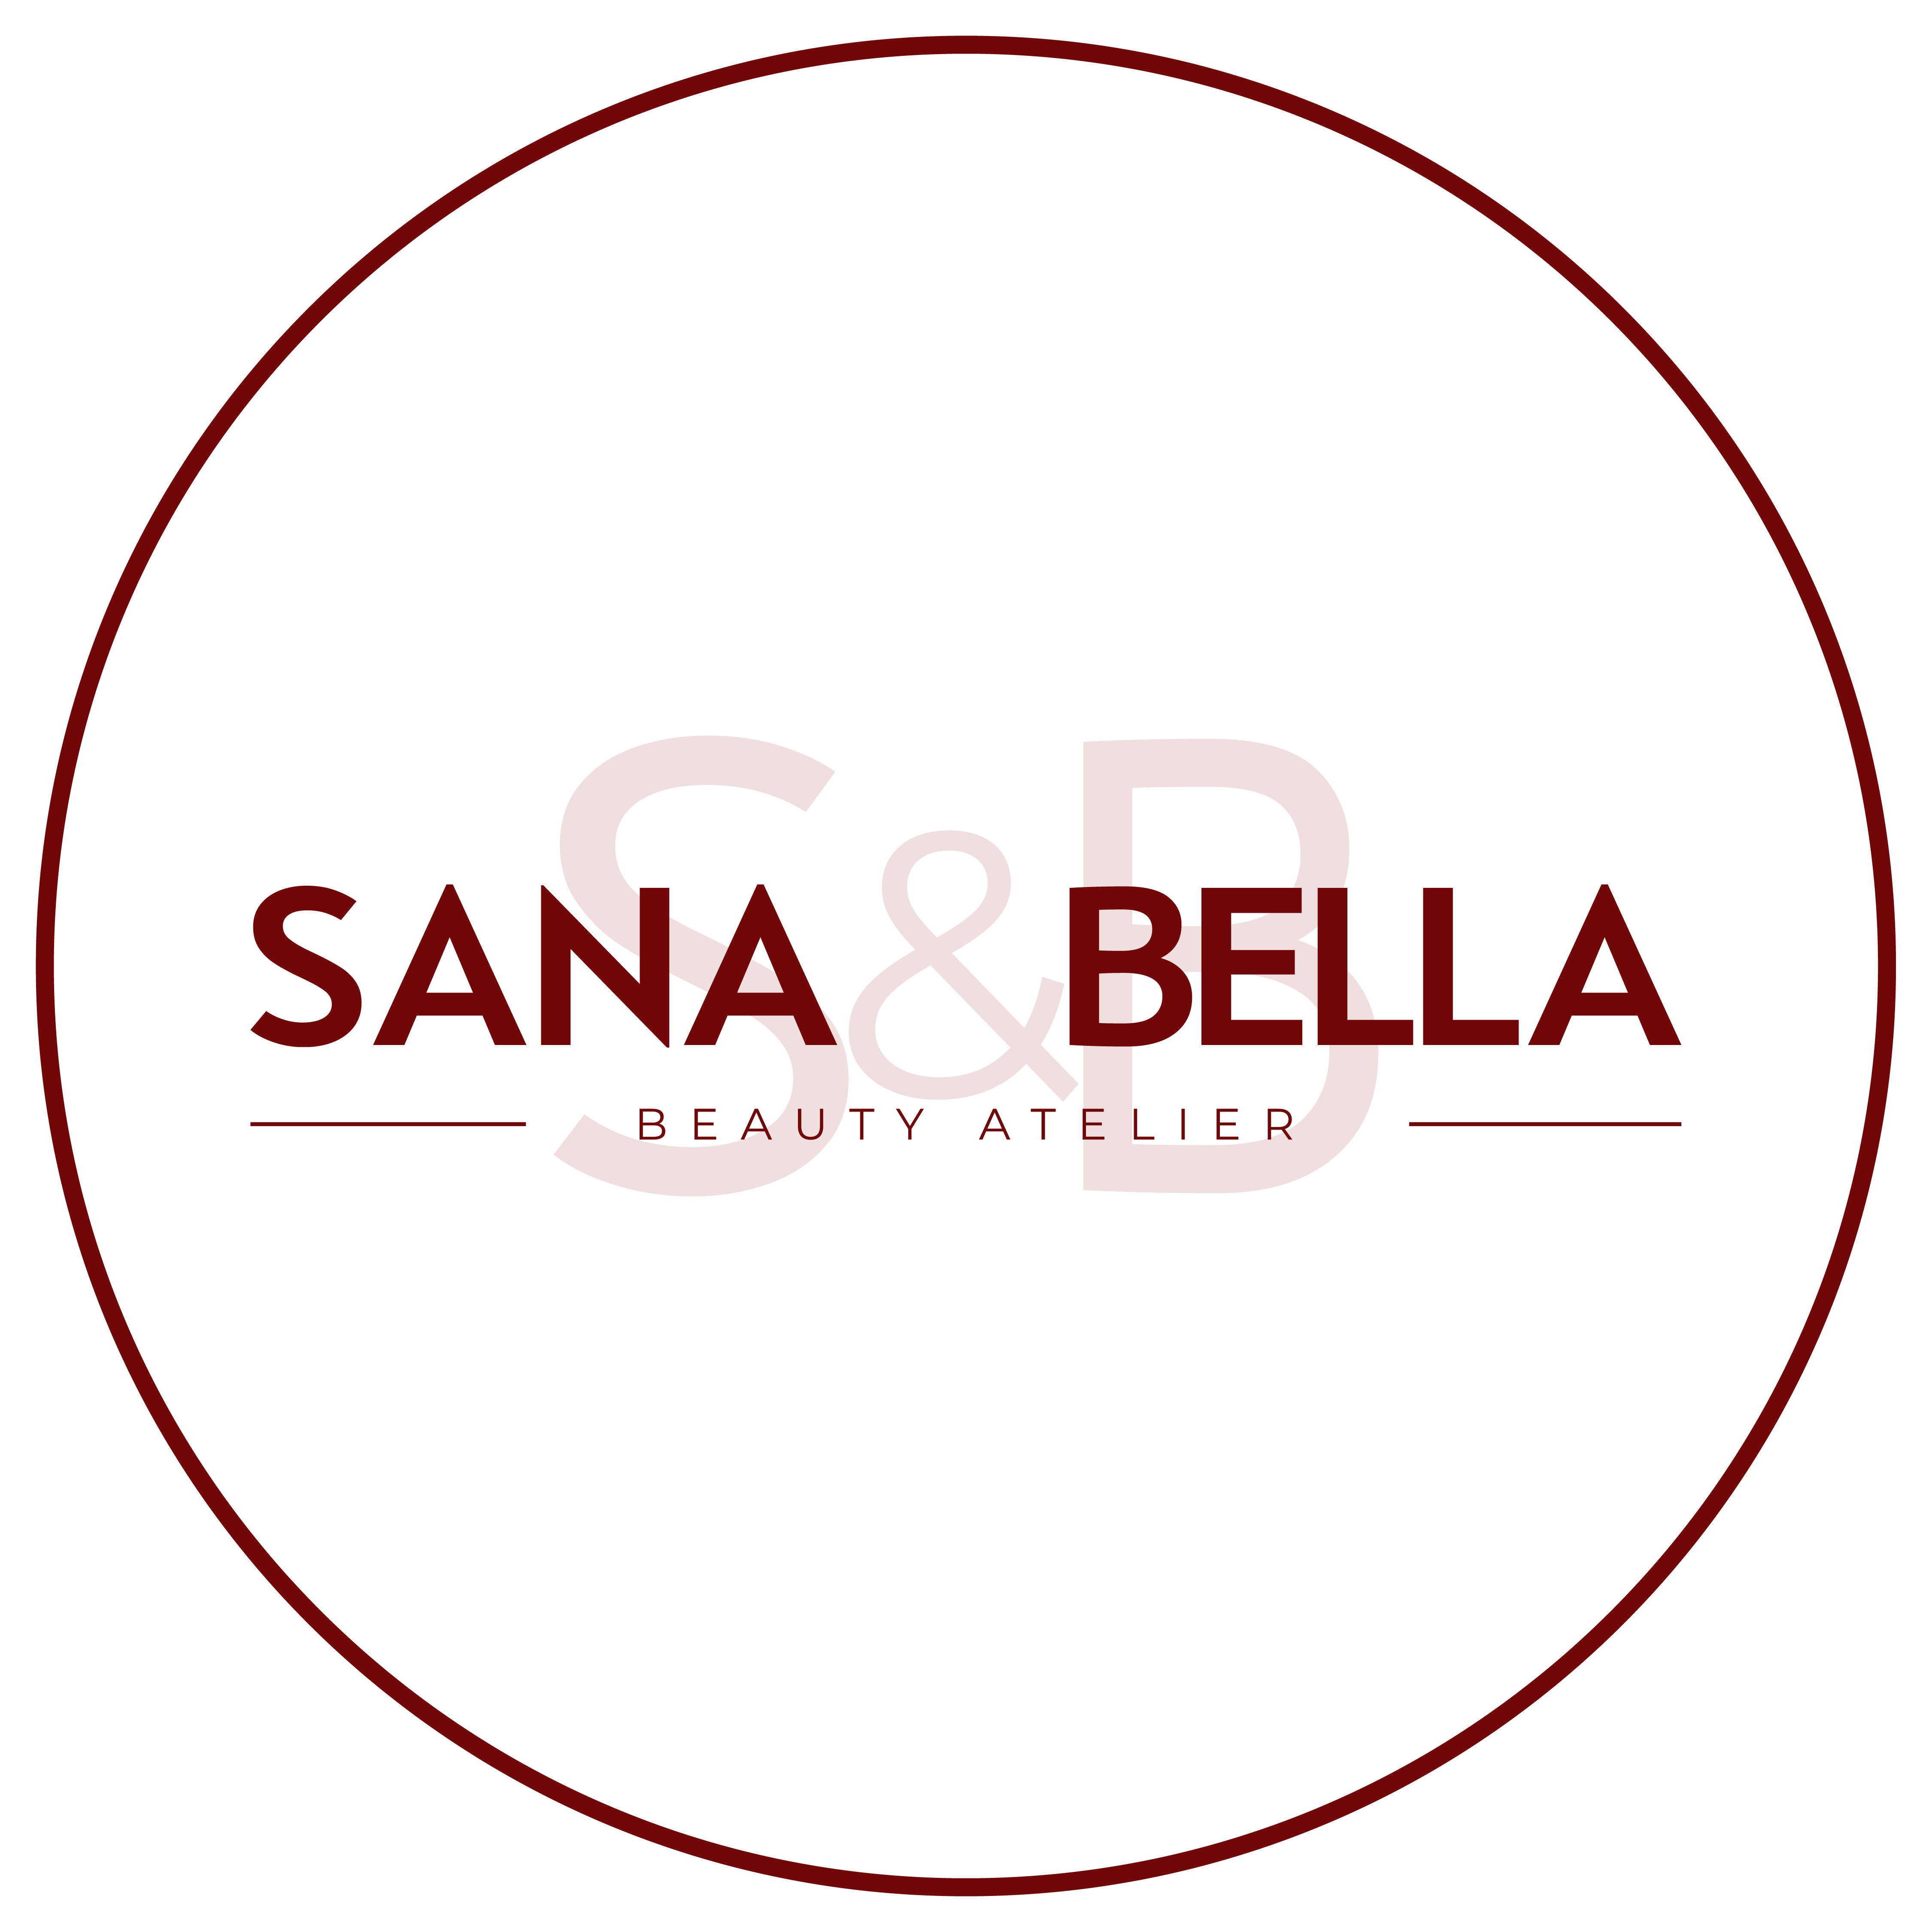 Sana e Bella